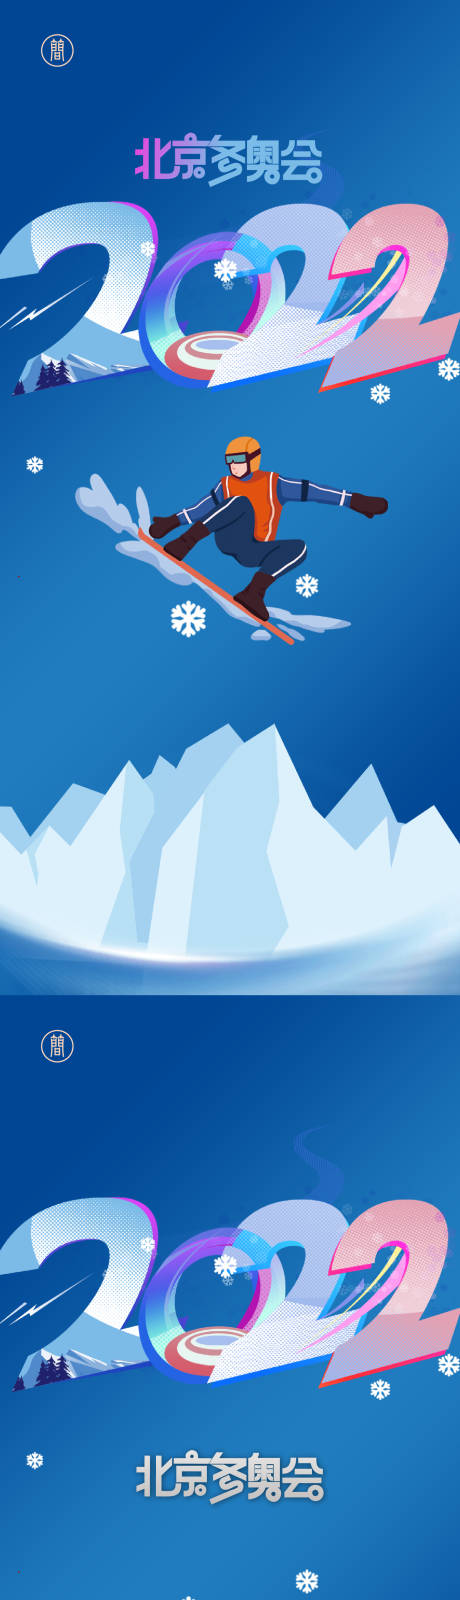 2022冬奥会系列海报